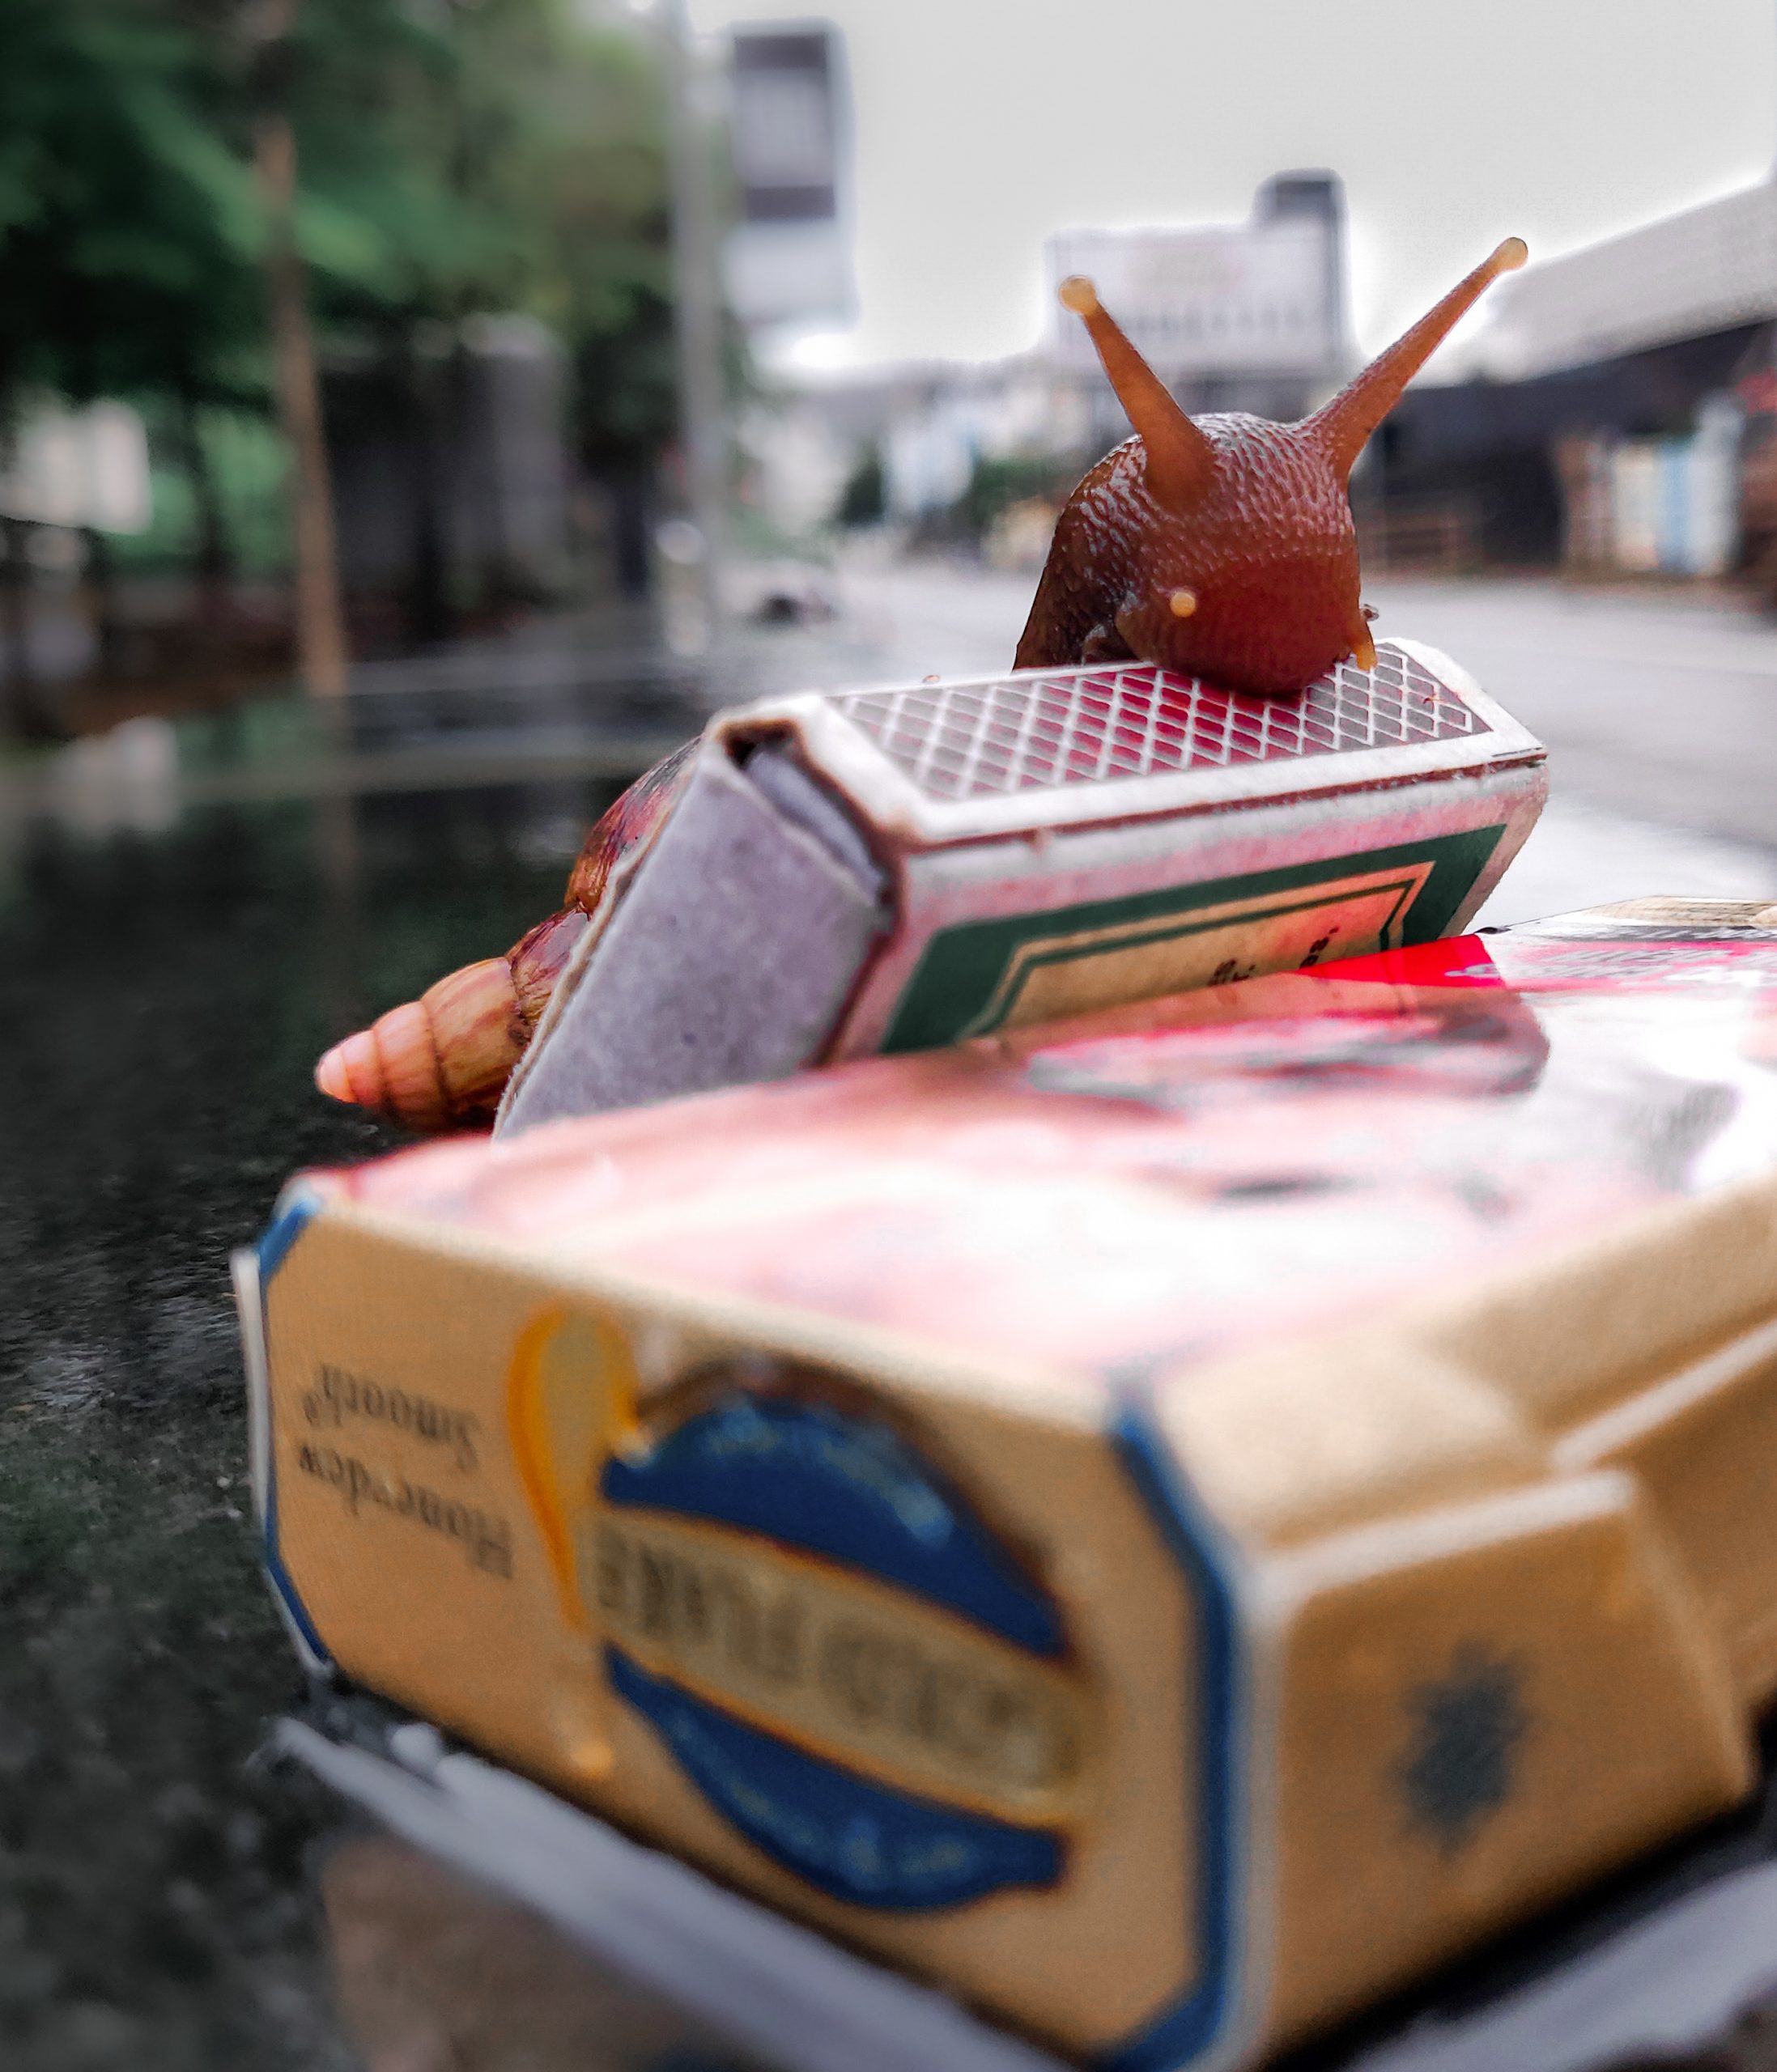 Snail over a matchbox